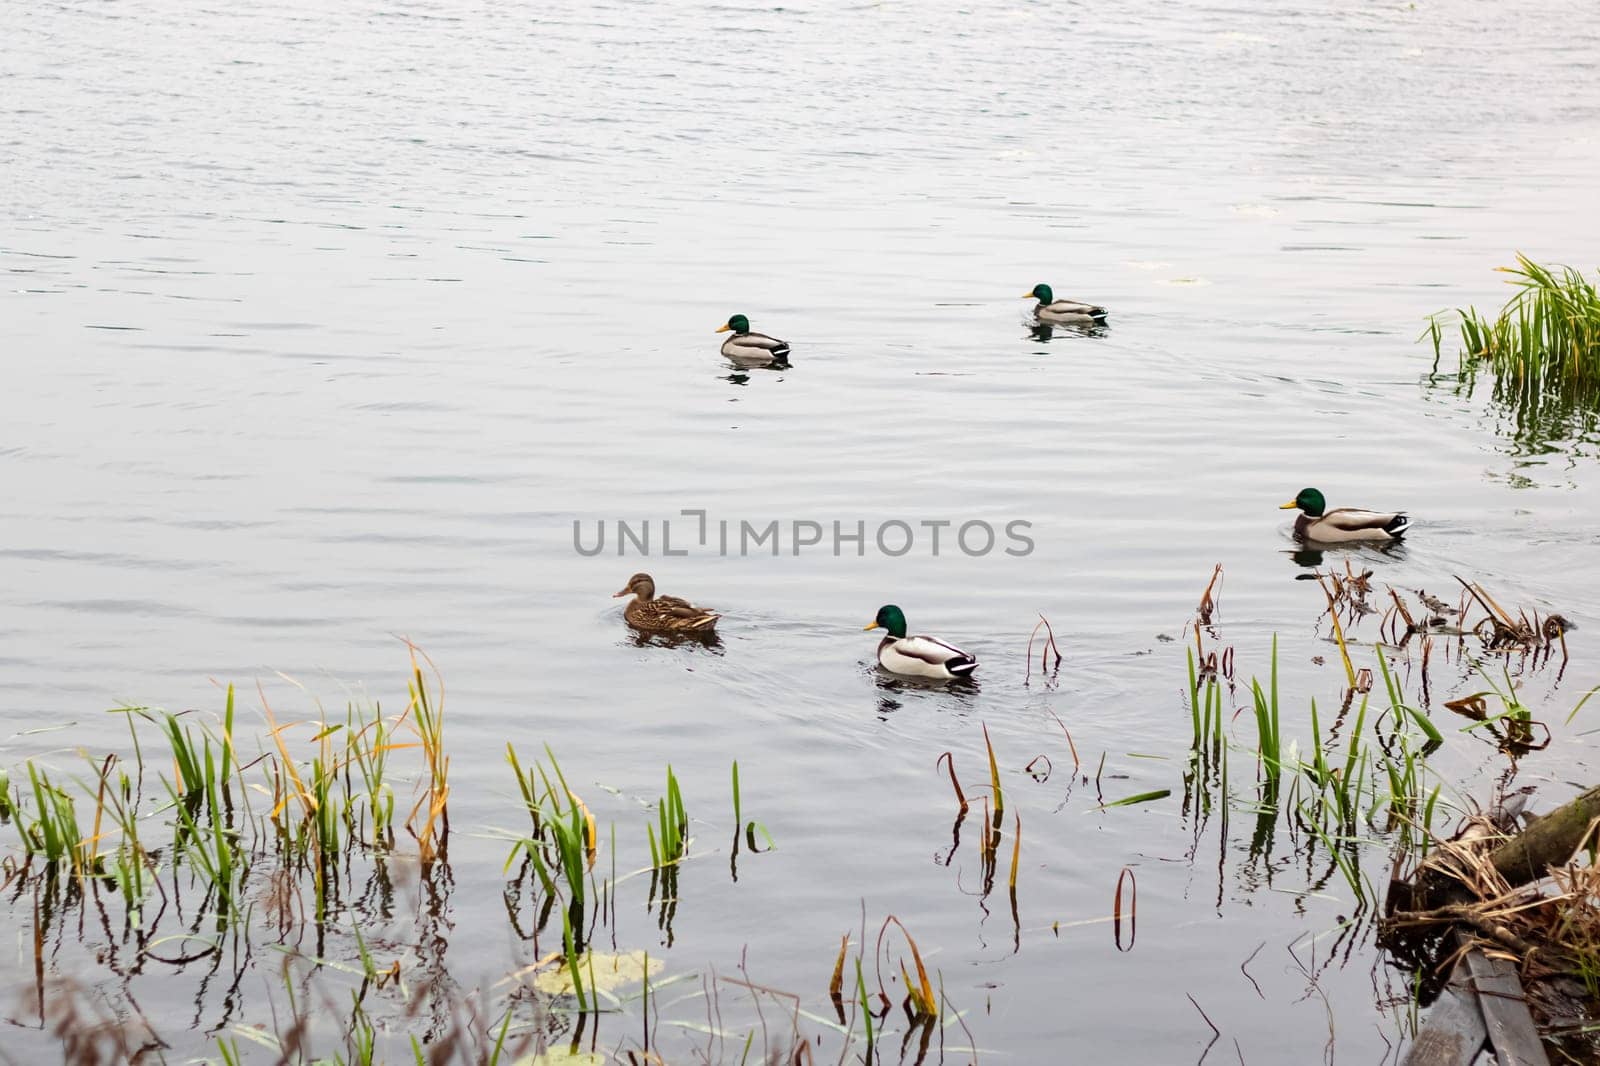 Ducks swim in the water near the shore by Vera1703